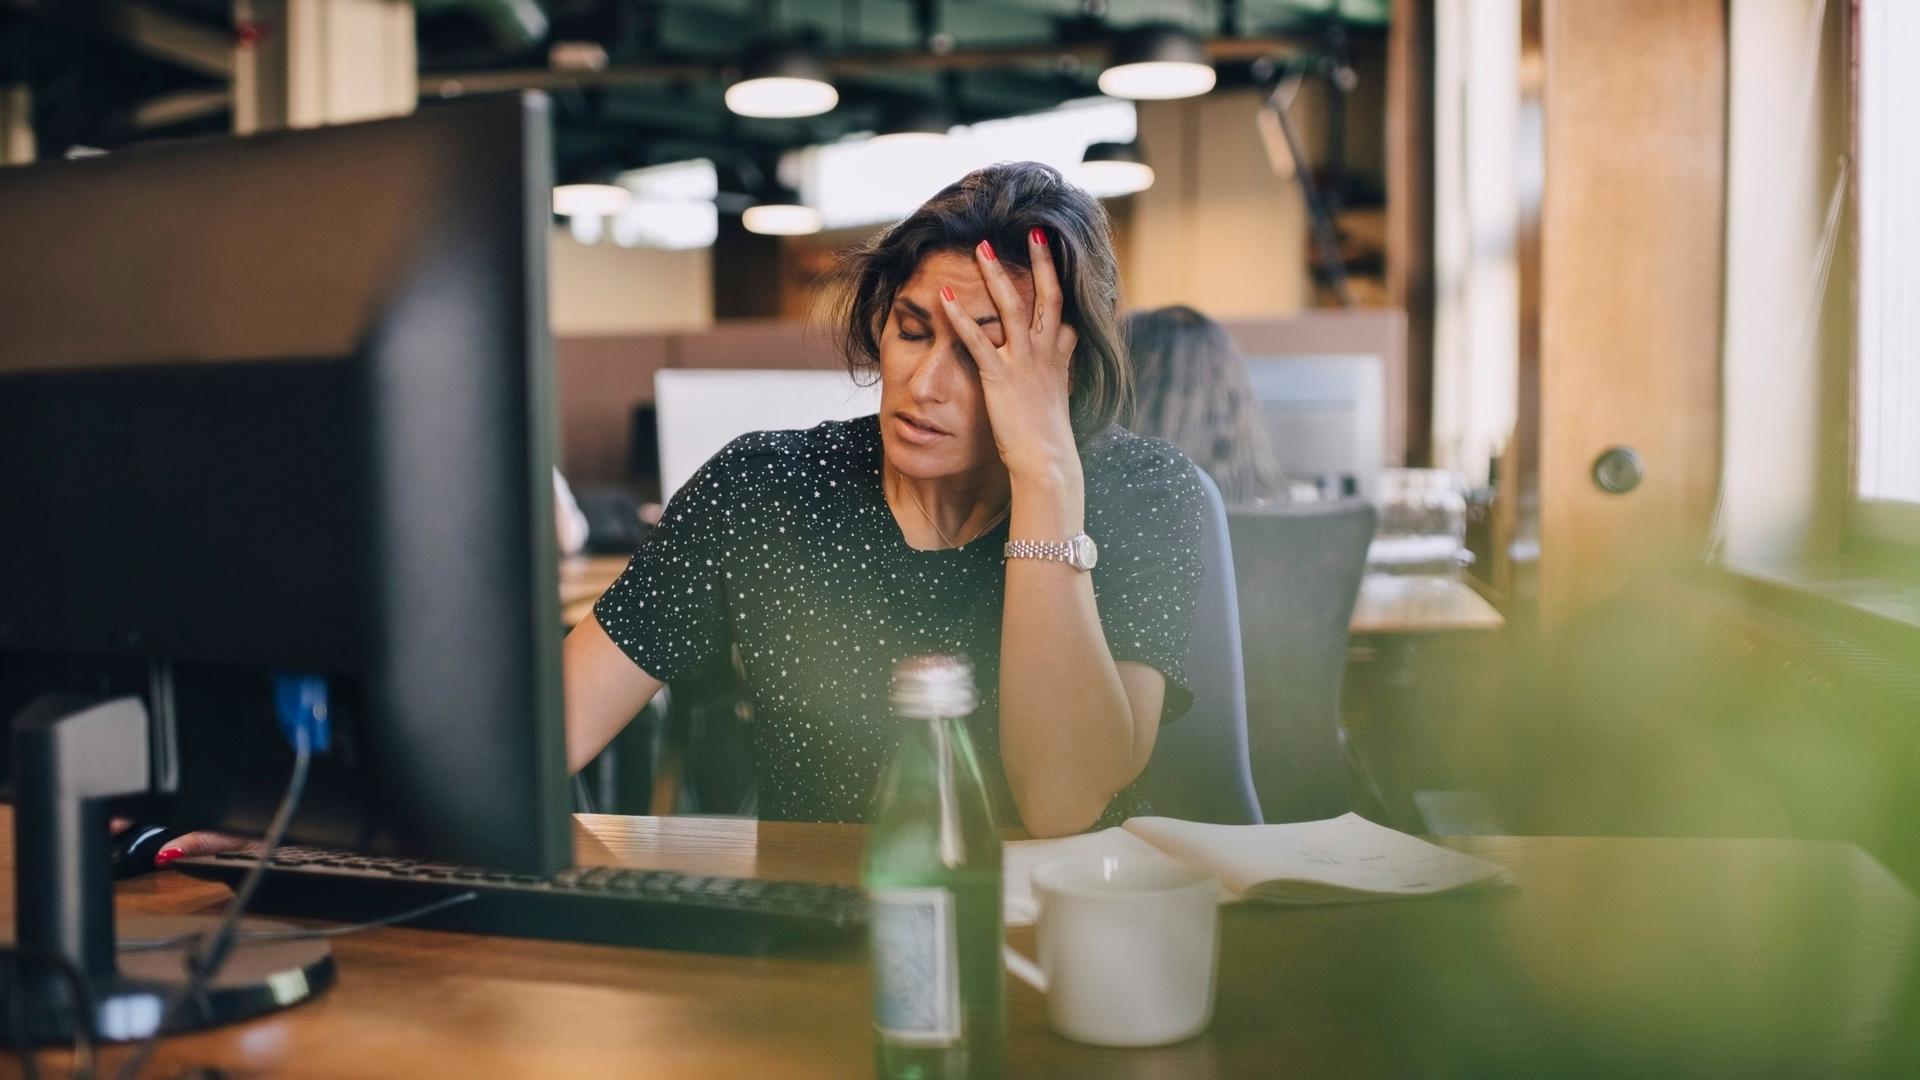 Eine Frau sitzt an einem Schreibtisch in einem Büro vor einem Computer und hält ihre Hand an den Kopf. Sie hat die Augen geschlossen und wirkt erschöpft.